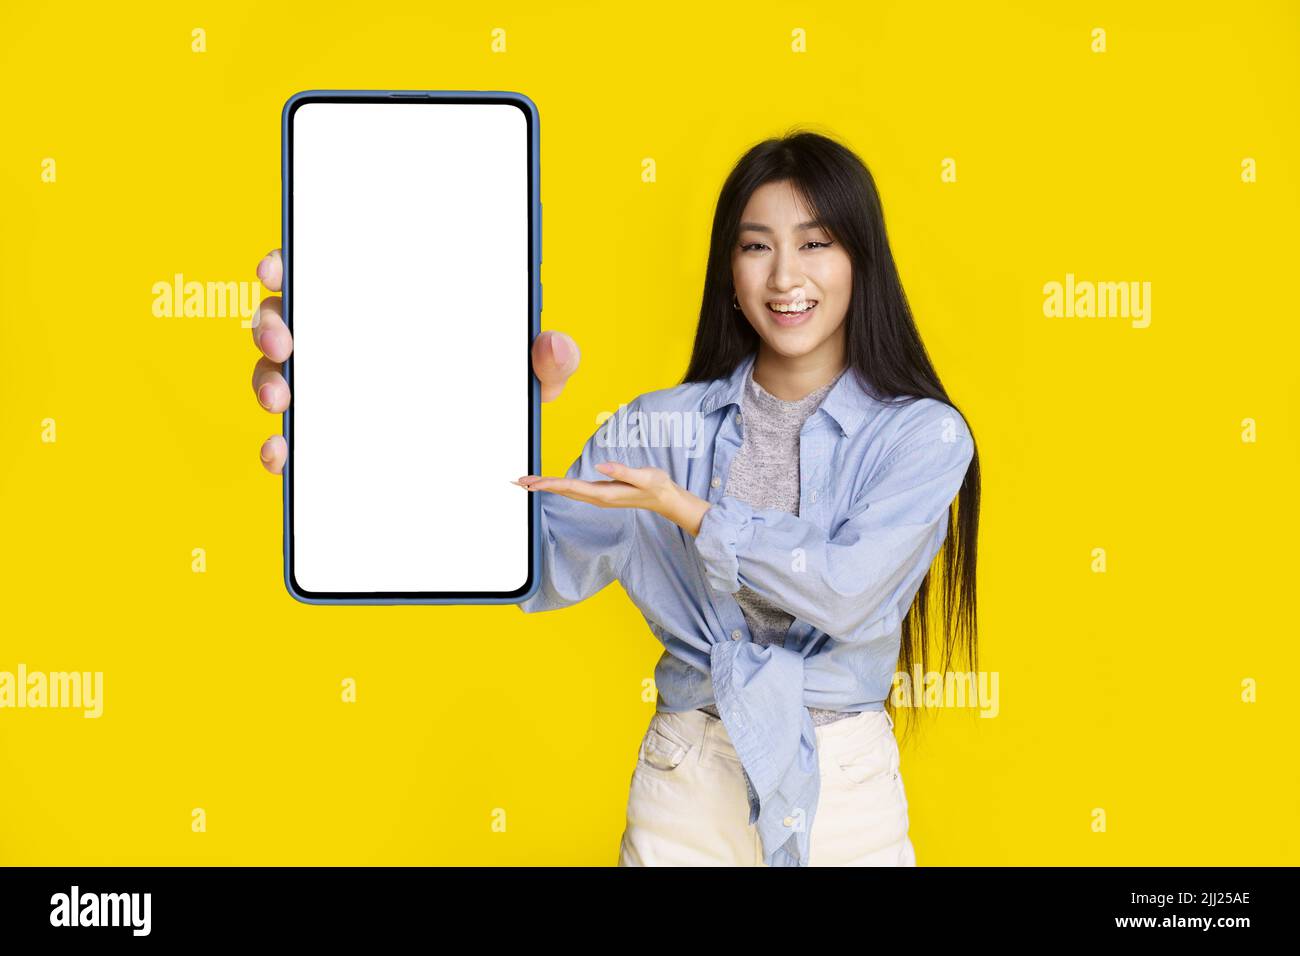 Bella ragazza asiatica con smartphone con schermo bianco felice di introdurre nuova app, gioco, vincere, isolato su sfondo giallo. Posizionamento del prodotto. Pubblicità app mobile. Foto Stock